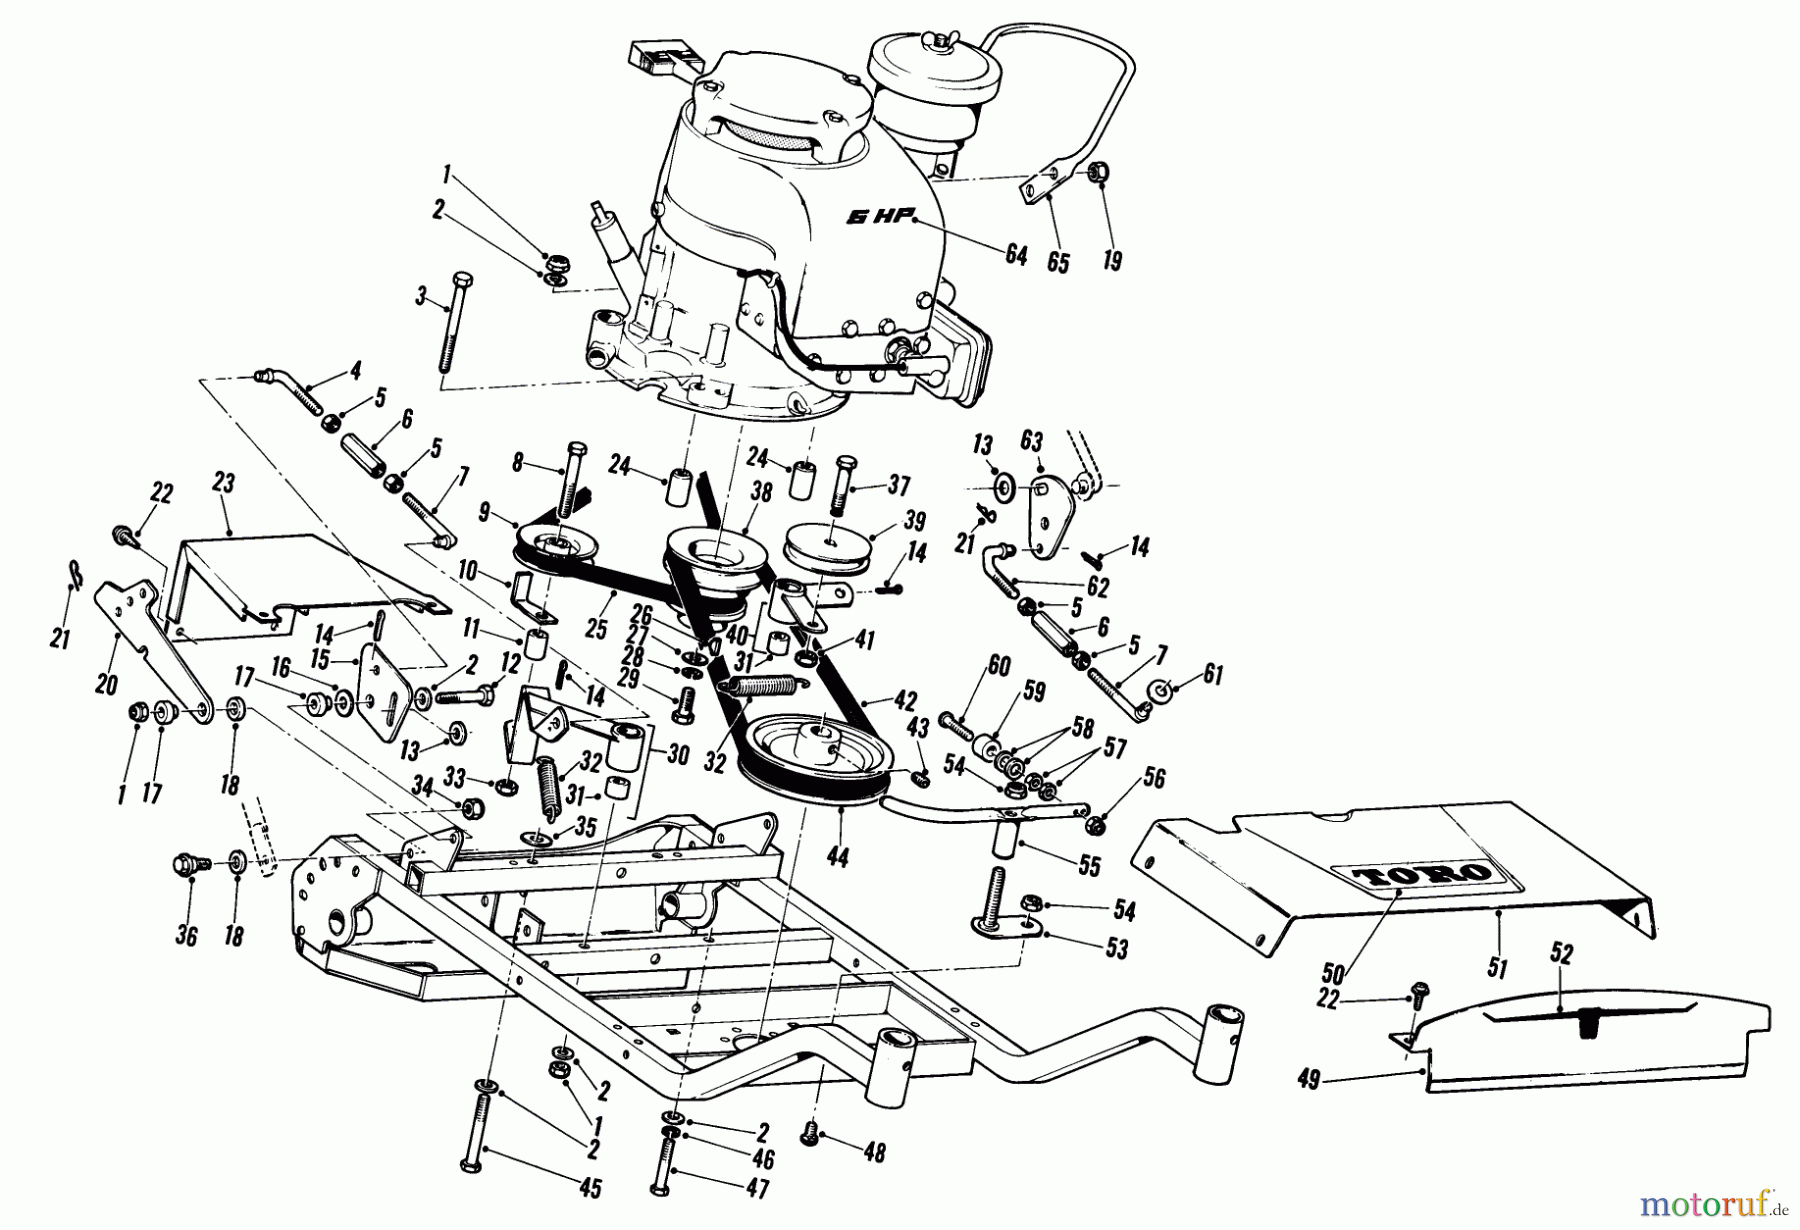  Toro Neu Mowers, Wide-Area Walk-Behind 23301 - Toro Lawnmower, 1968 (8000001-8999999) 25